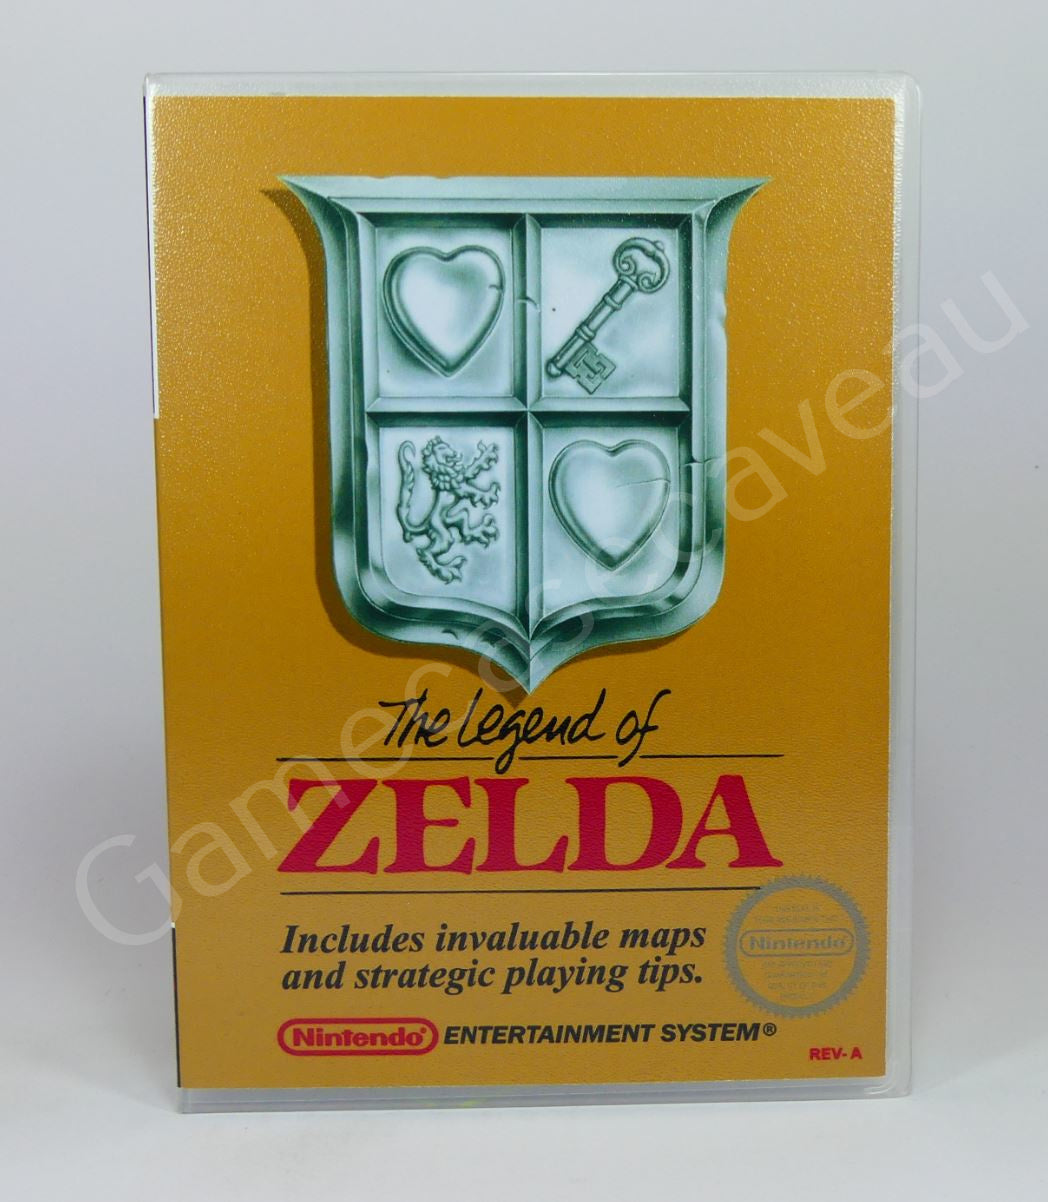 The Legend of Zelda - NES Replacement Case